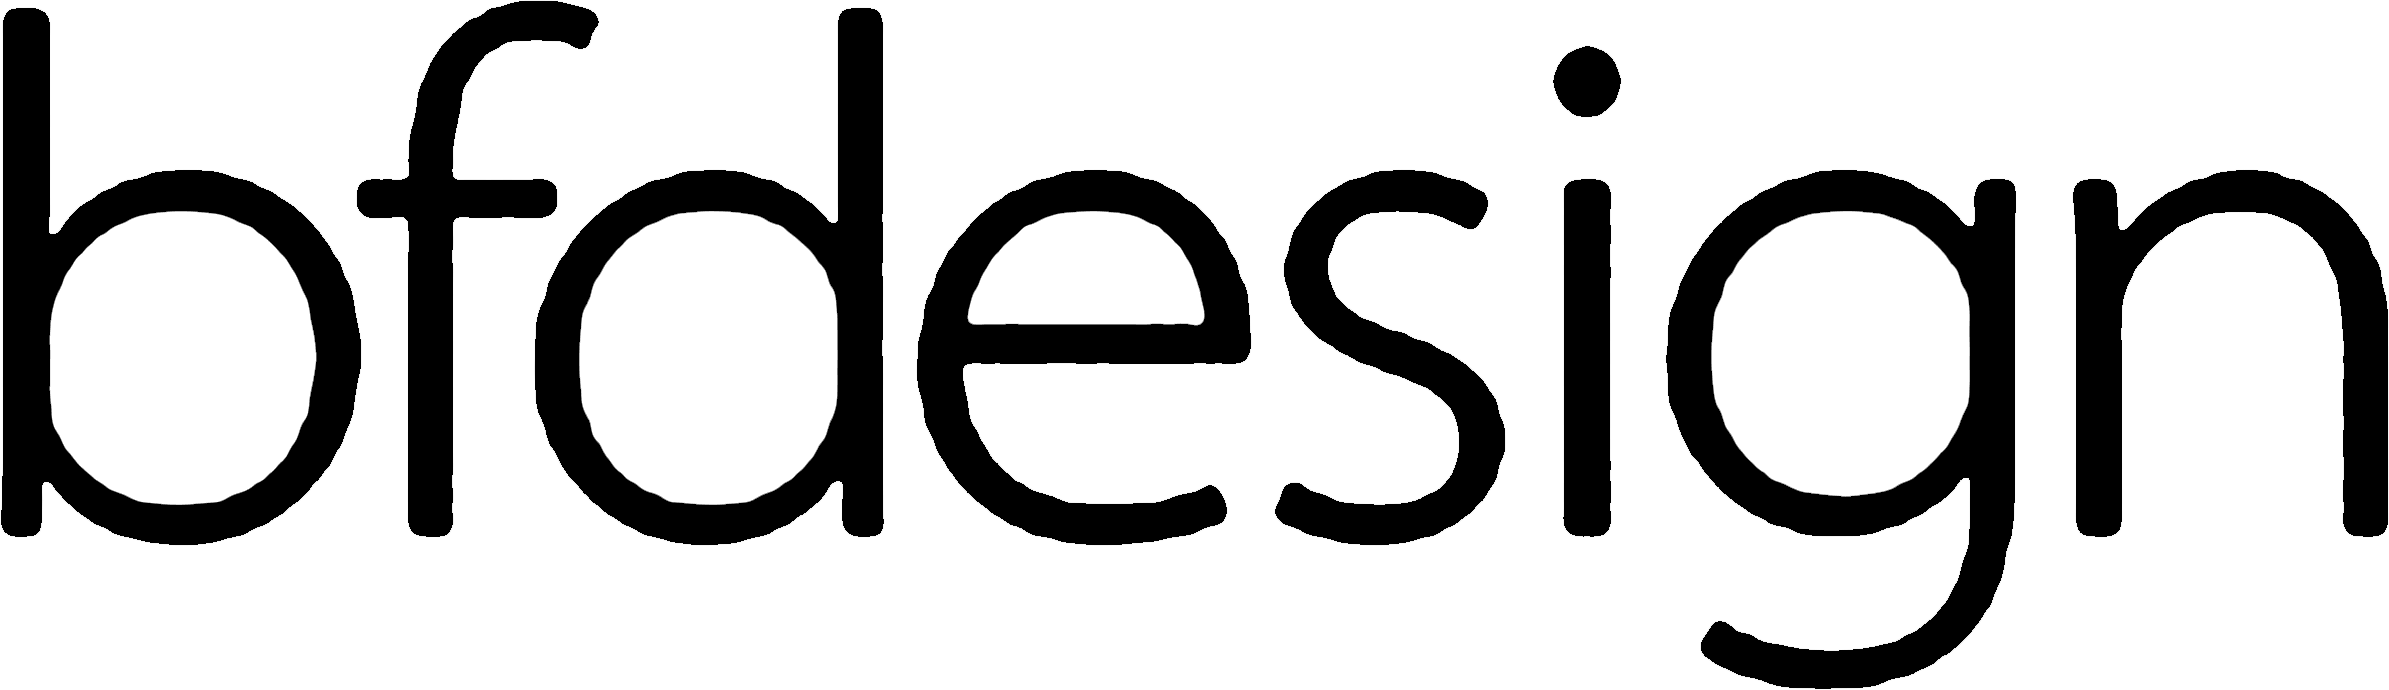 bfdesign-logo | ベースメントファクトリーデザイン